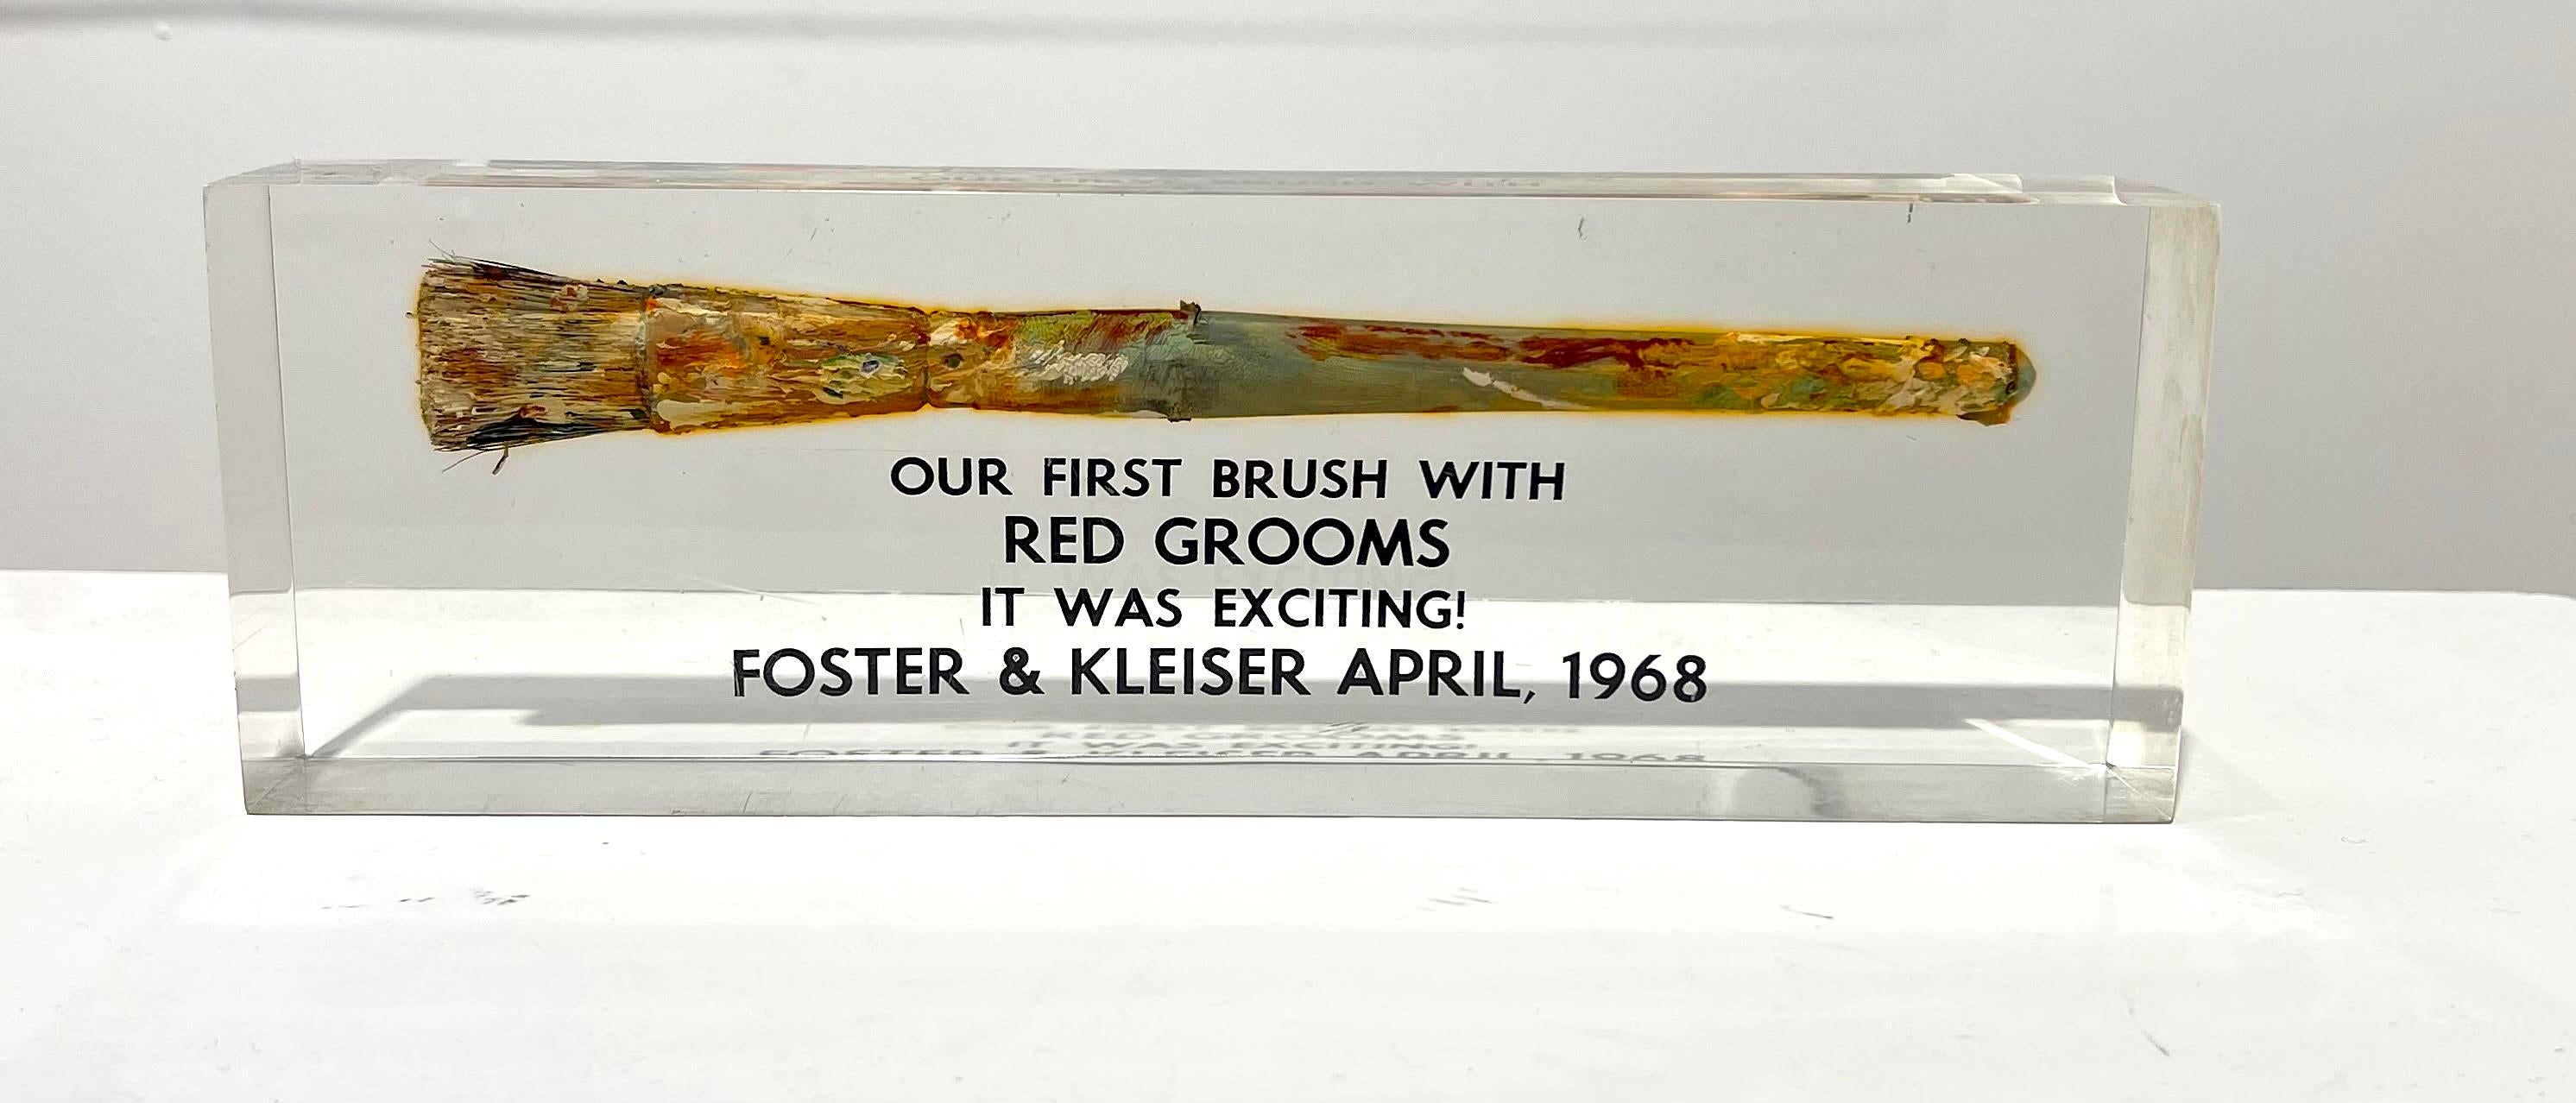 Les palefreniers rouges
"Notre premier contact avec les palefreniers rouges/ C'était excitant !", 1968
Pinceau avec peinture à l'intérieur d'un boîtier en acrylique
11 × 3 1/2 × 2 pouces
Non encadré
Ce pinceau - avec sa peinture d'origine - a été le